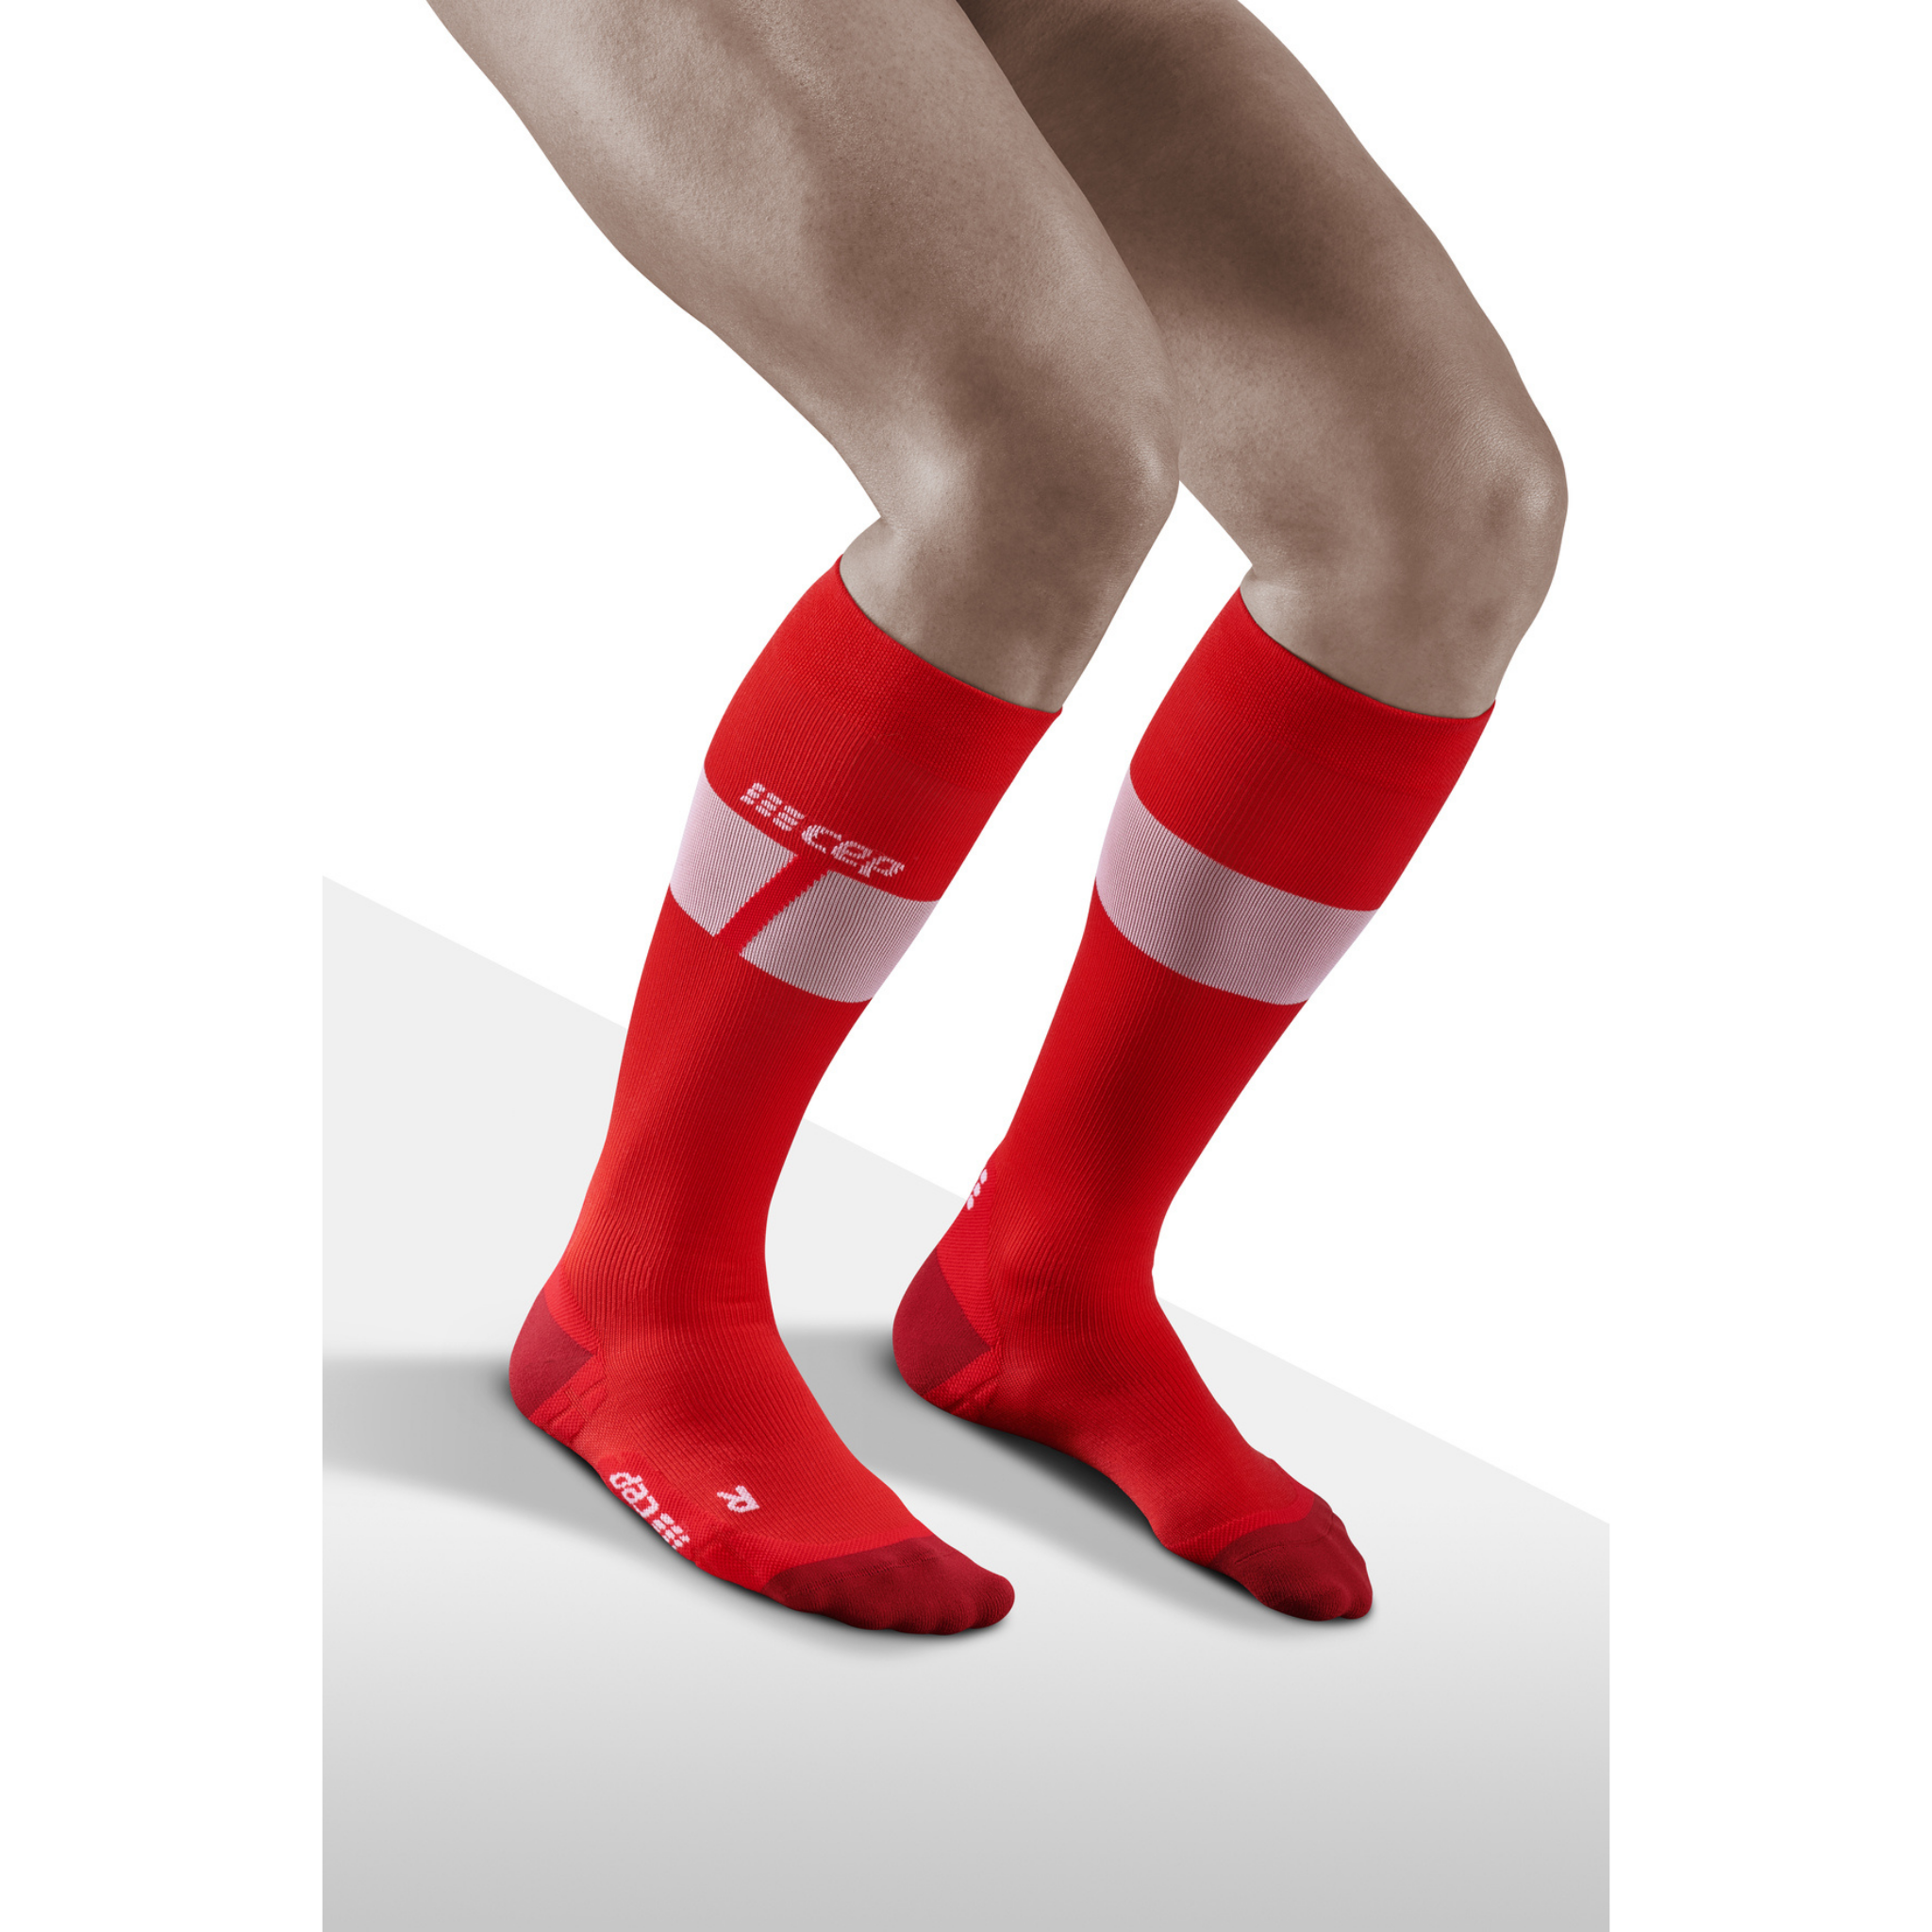 Calcetines de compresión ski ultralight tall, hombre, rojo/blanco, modelo de vista frontal